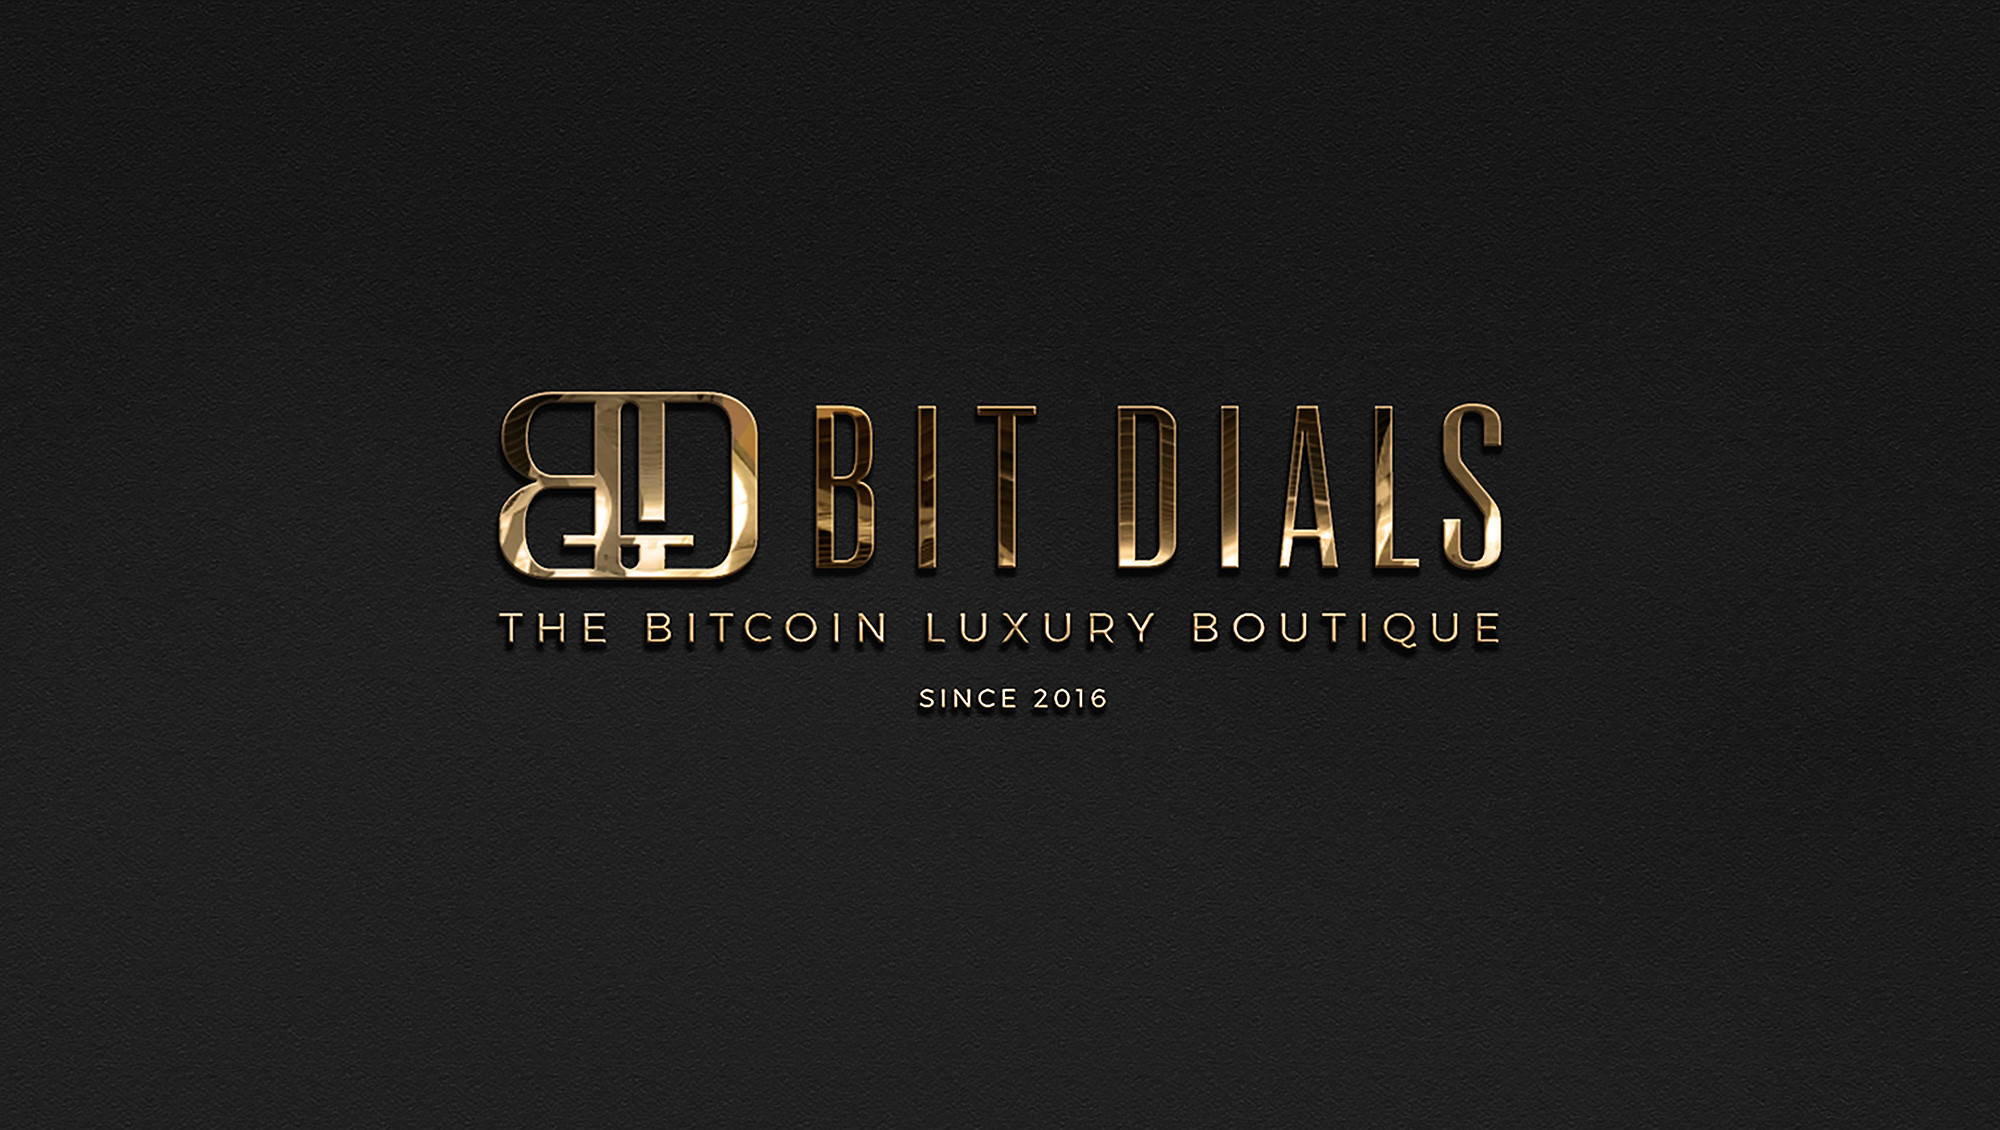 BitDials| The Bitcoin Luxury Boutique accepts BTC, XMR, ETH, LTC, BCH, DOGE, DCR